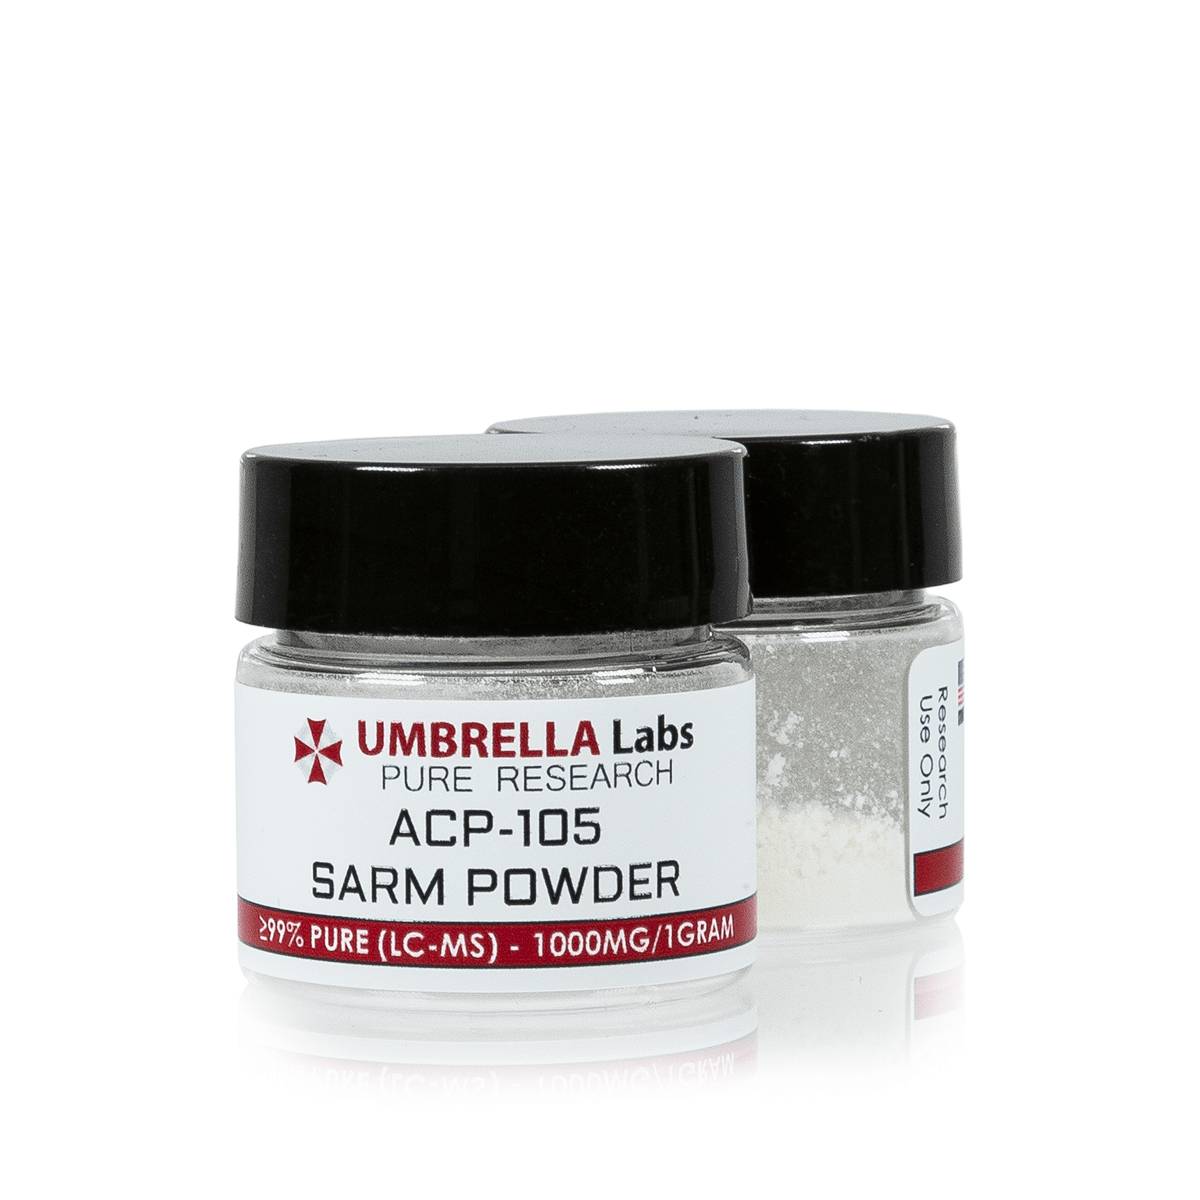 Umbrella Sarms ACP-105 SARM POWDER – 1000 mg